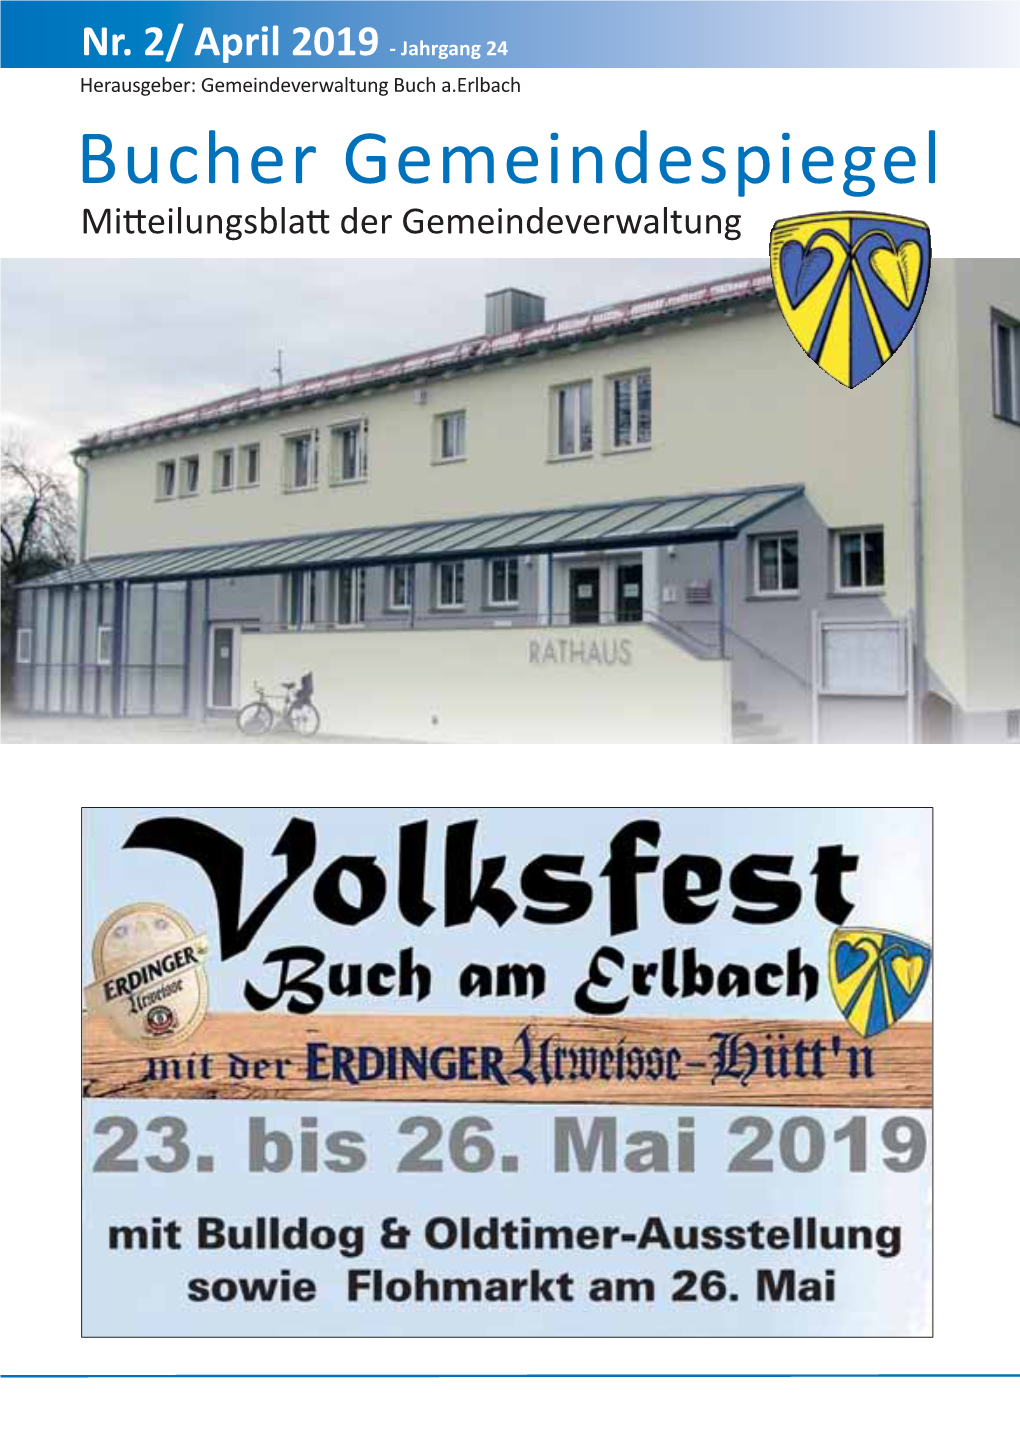 Bucher Gemeindespiegel Mitteilungsblatt Der Gemeindeverwaltung Gemeindespiegel 2019-2 Gemeindespiegel 2014-4 02.04.2019 18:51 Seite 2